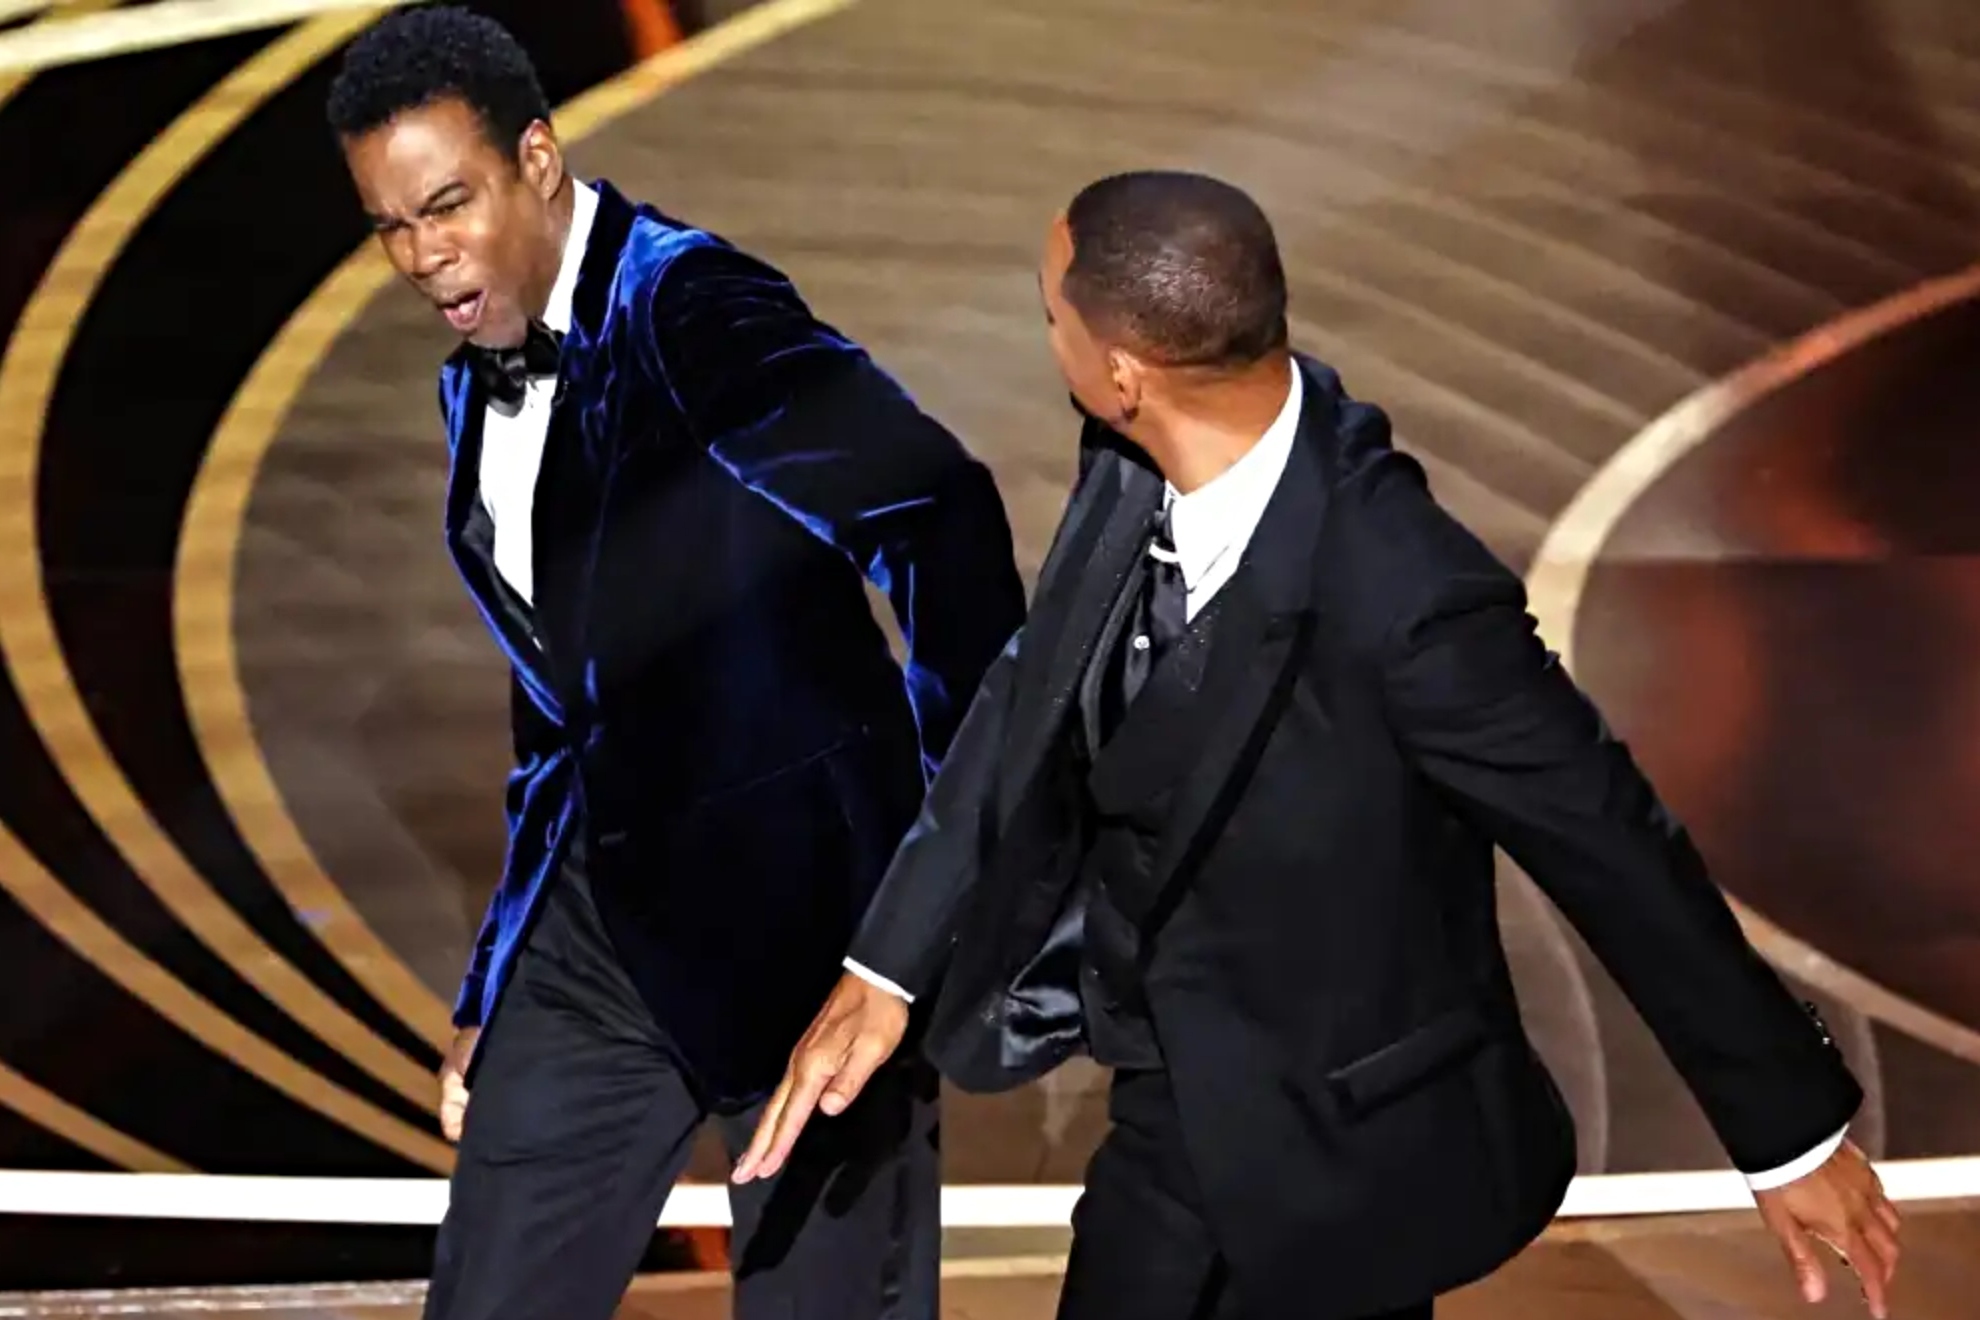 Un ao del bofetn de Will Smith a Chris Rock en los Oscar: qu sanciones puso la Academia?